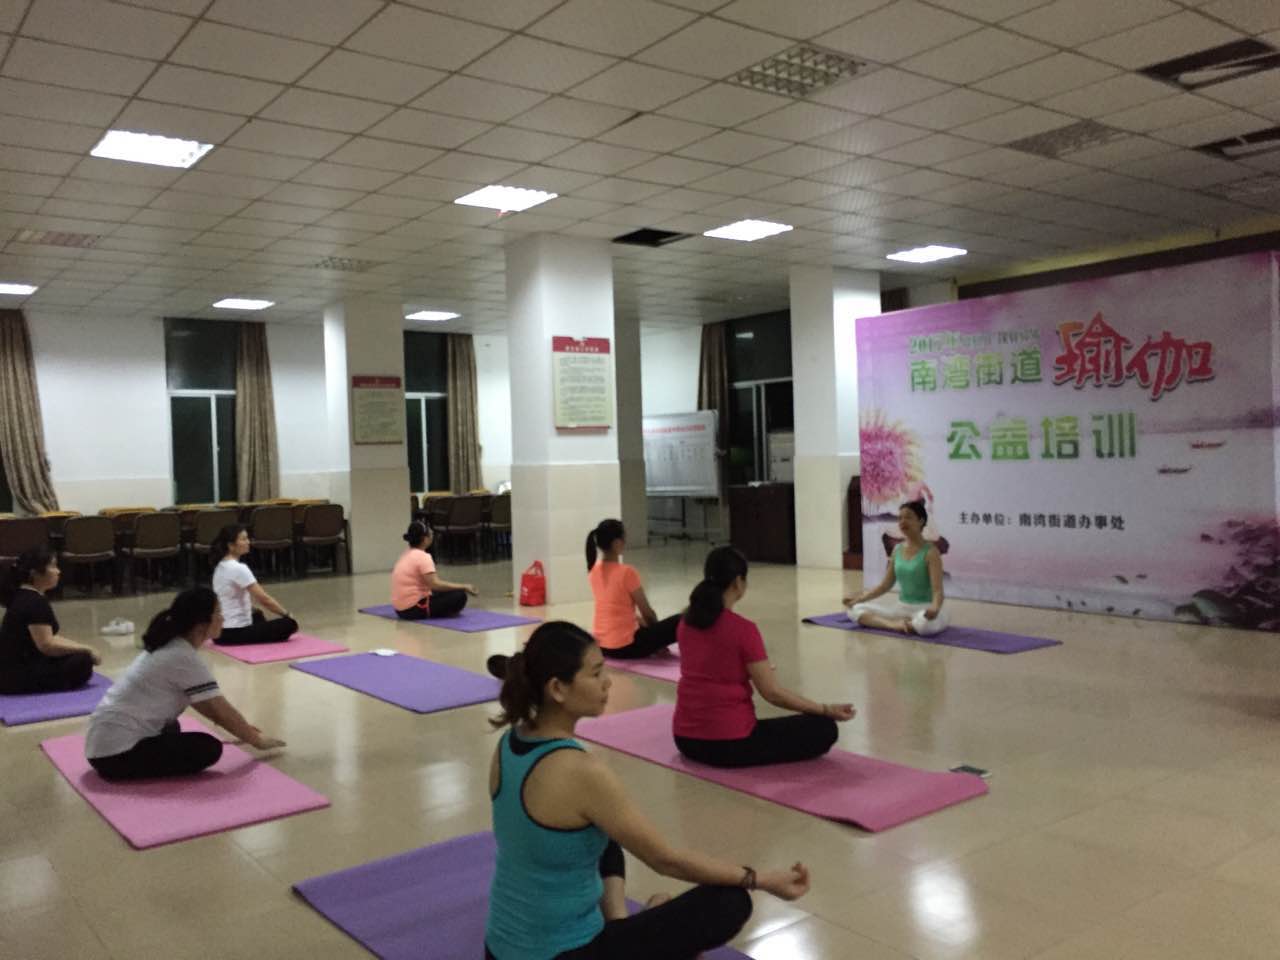 丹竹头社区开展瑜伽培训班活动